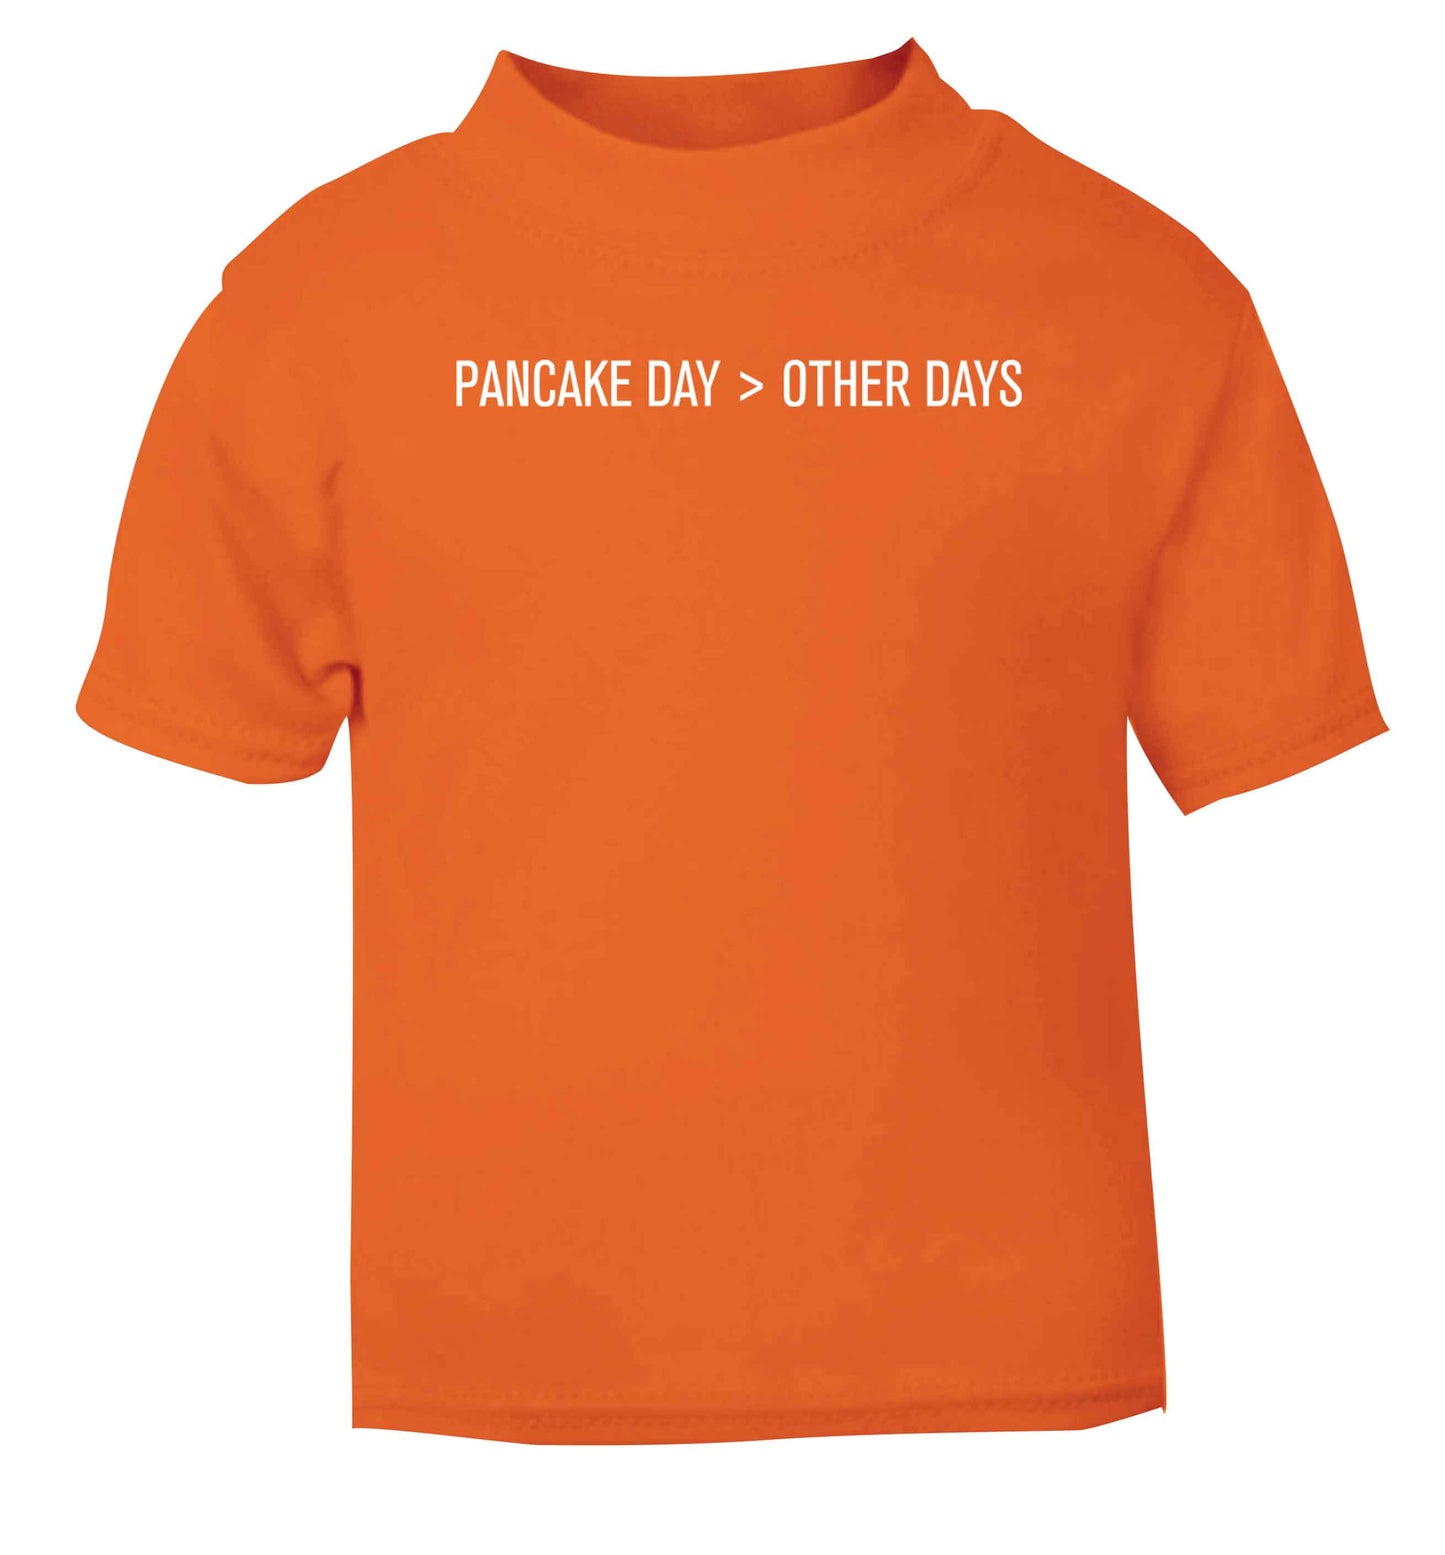 Pancake day > other days orange baby toddler Tshirt 2 Years